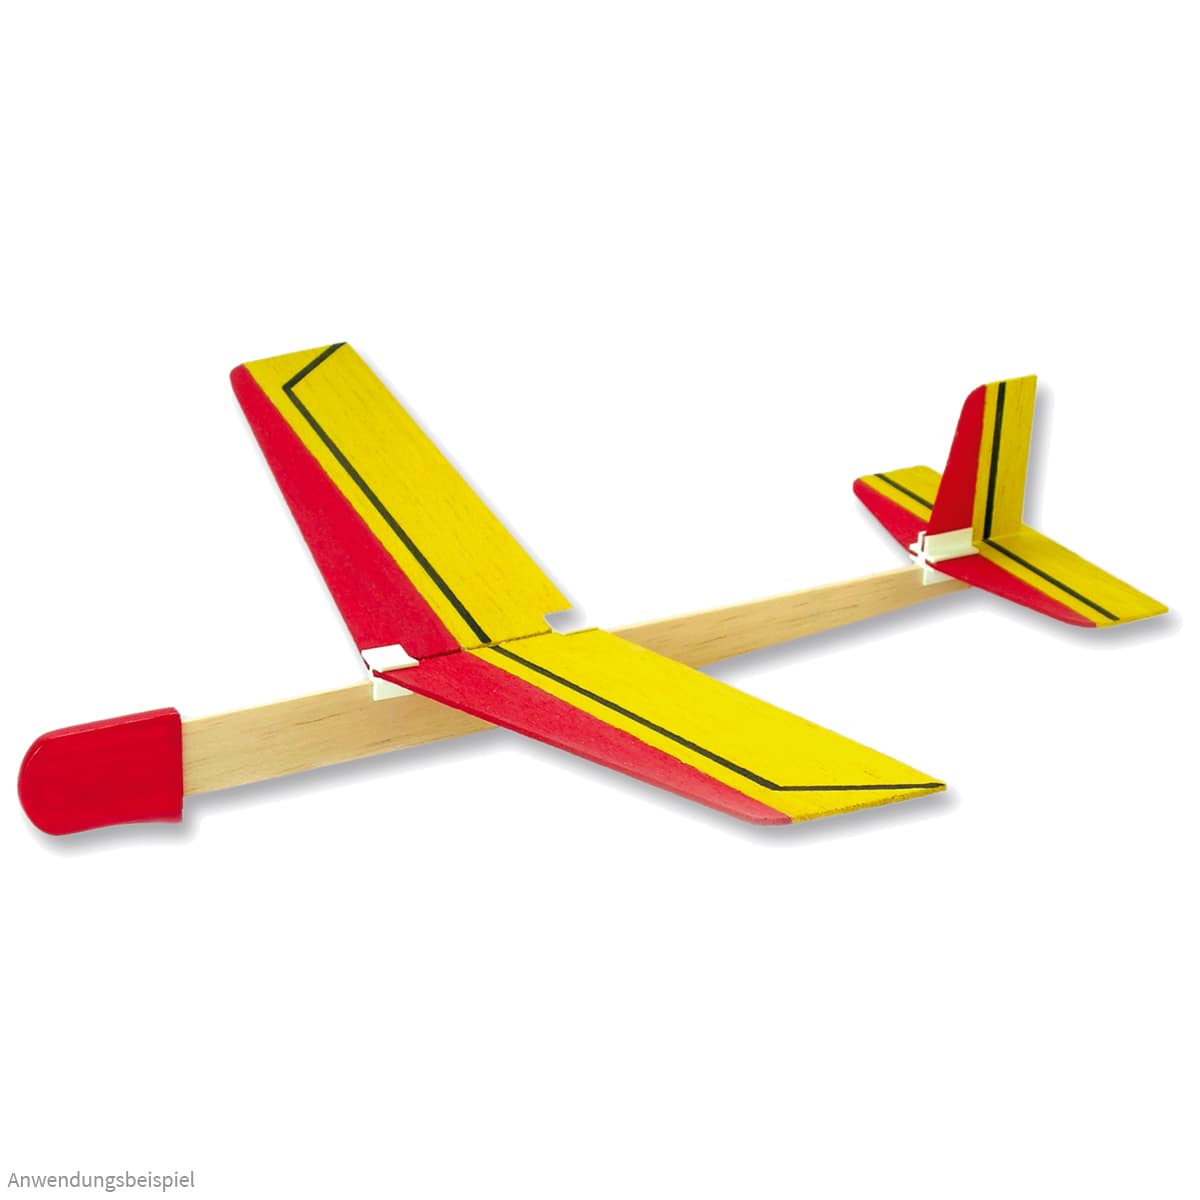 Bausatz Flugzeug 10 Bauteile zum Gestalten Holz Basteln Geschenk Kinder 